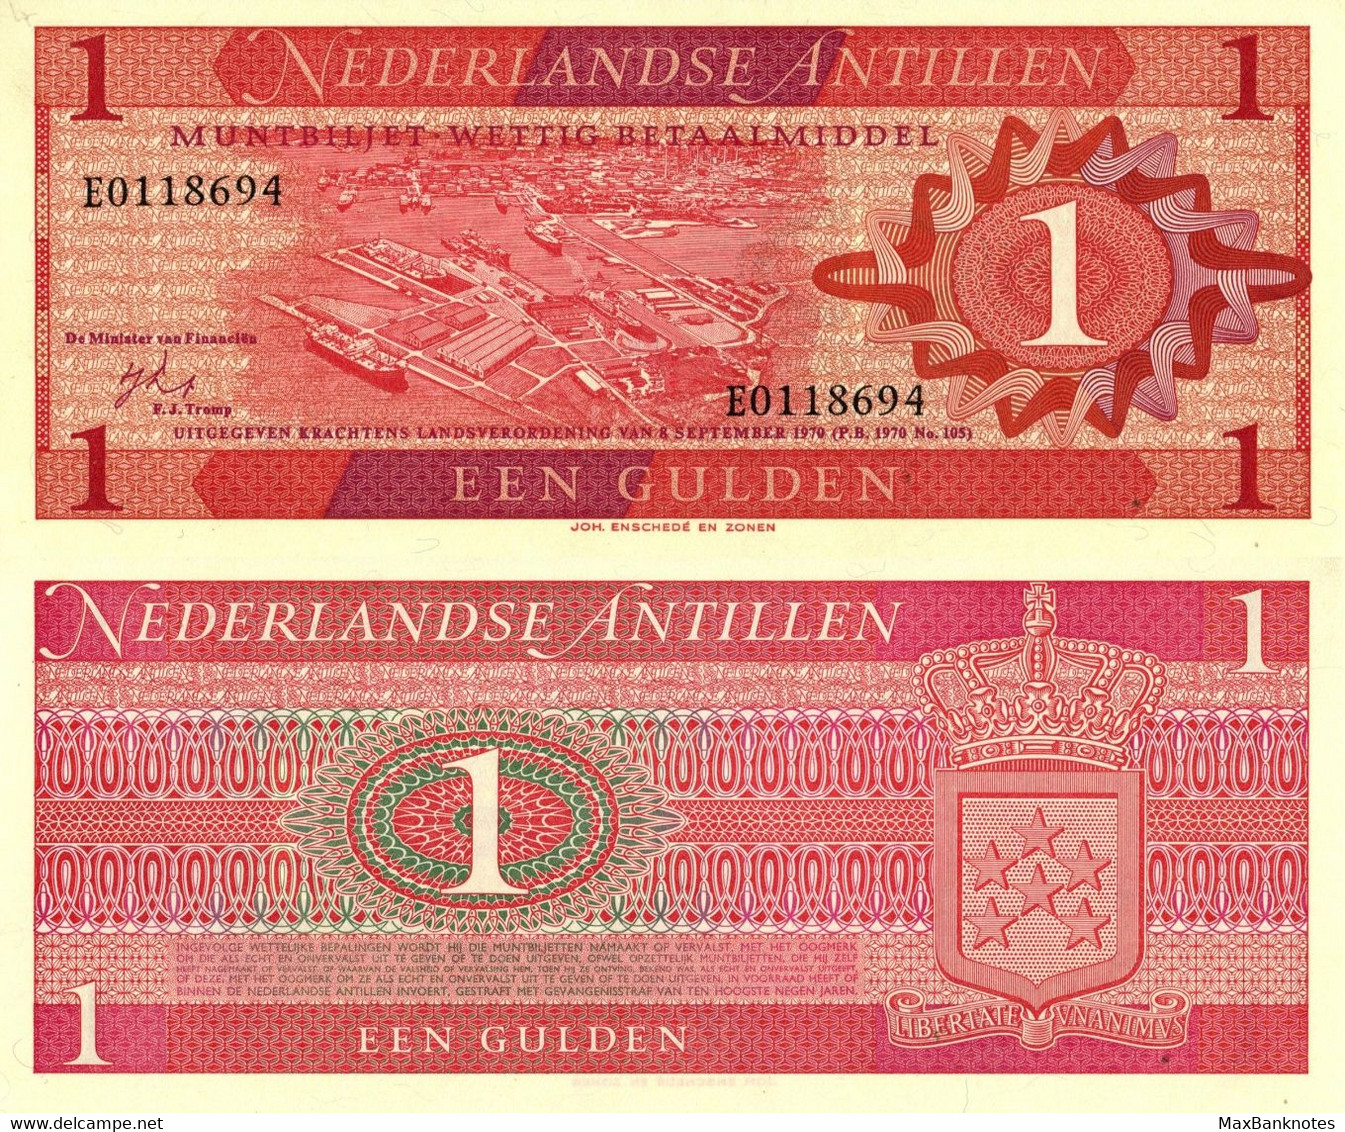 Netherlands Antilles / 1 Gulden / 1970 / P-20(a) / UNC - Ostkaribik